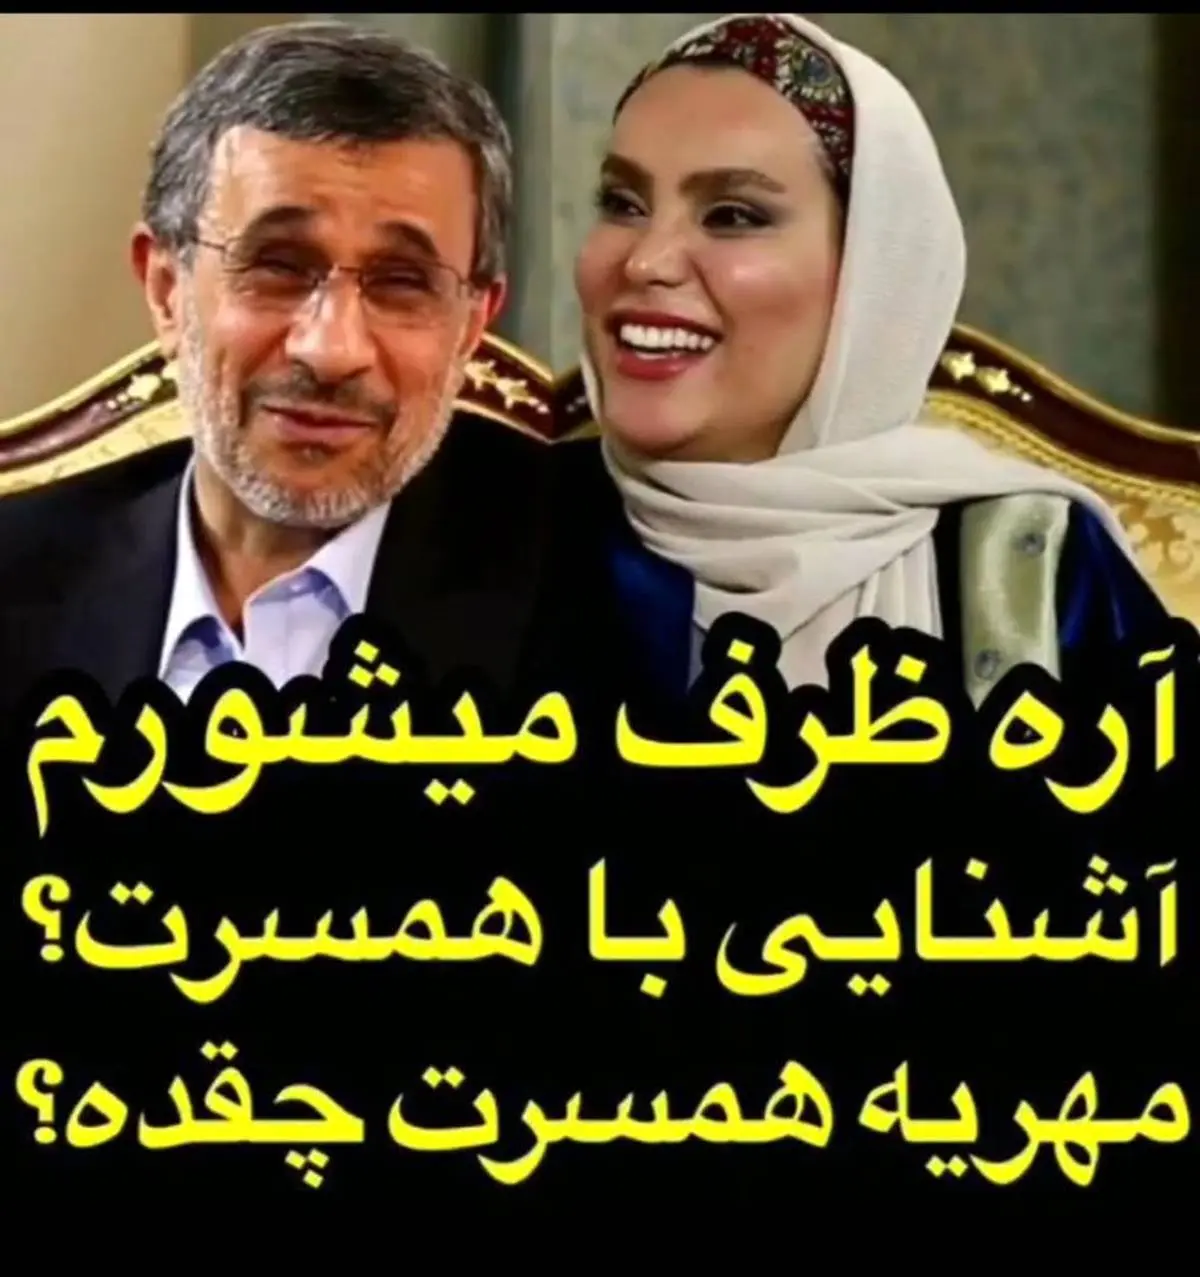 مهریه همسر احمدی نژاد فاش شد + فیلم